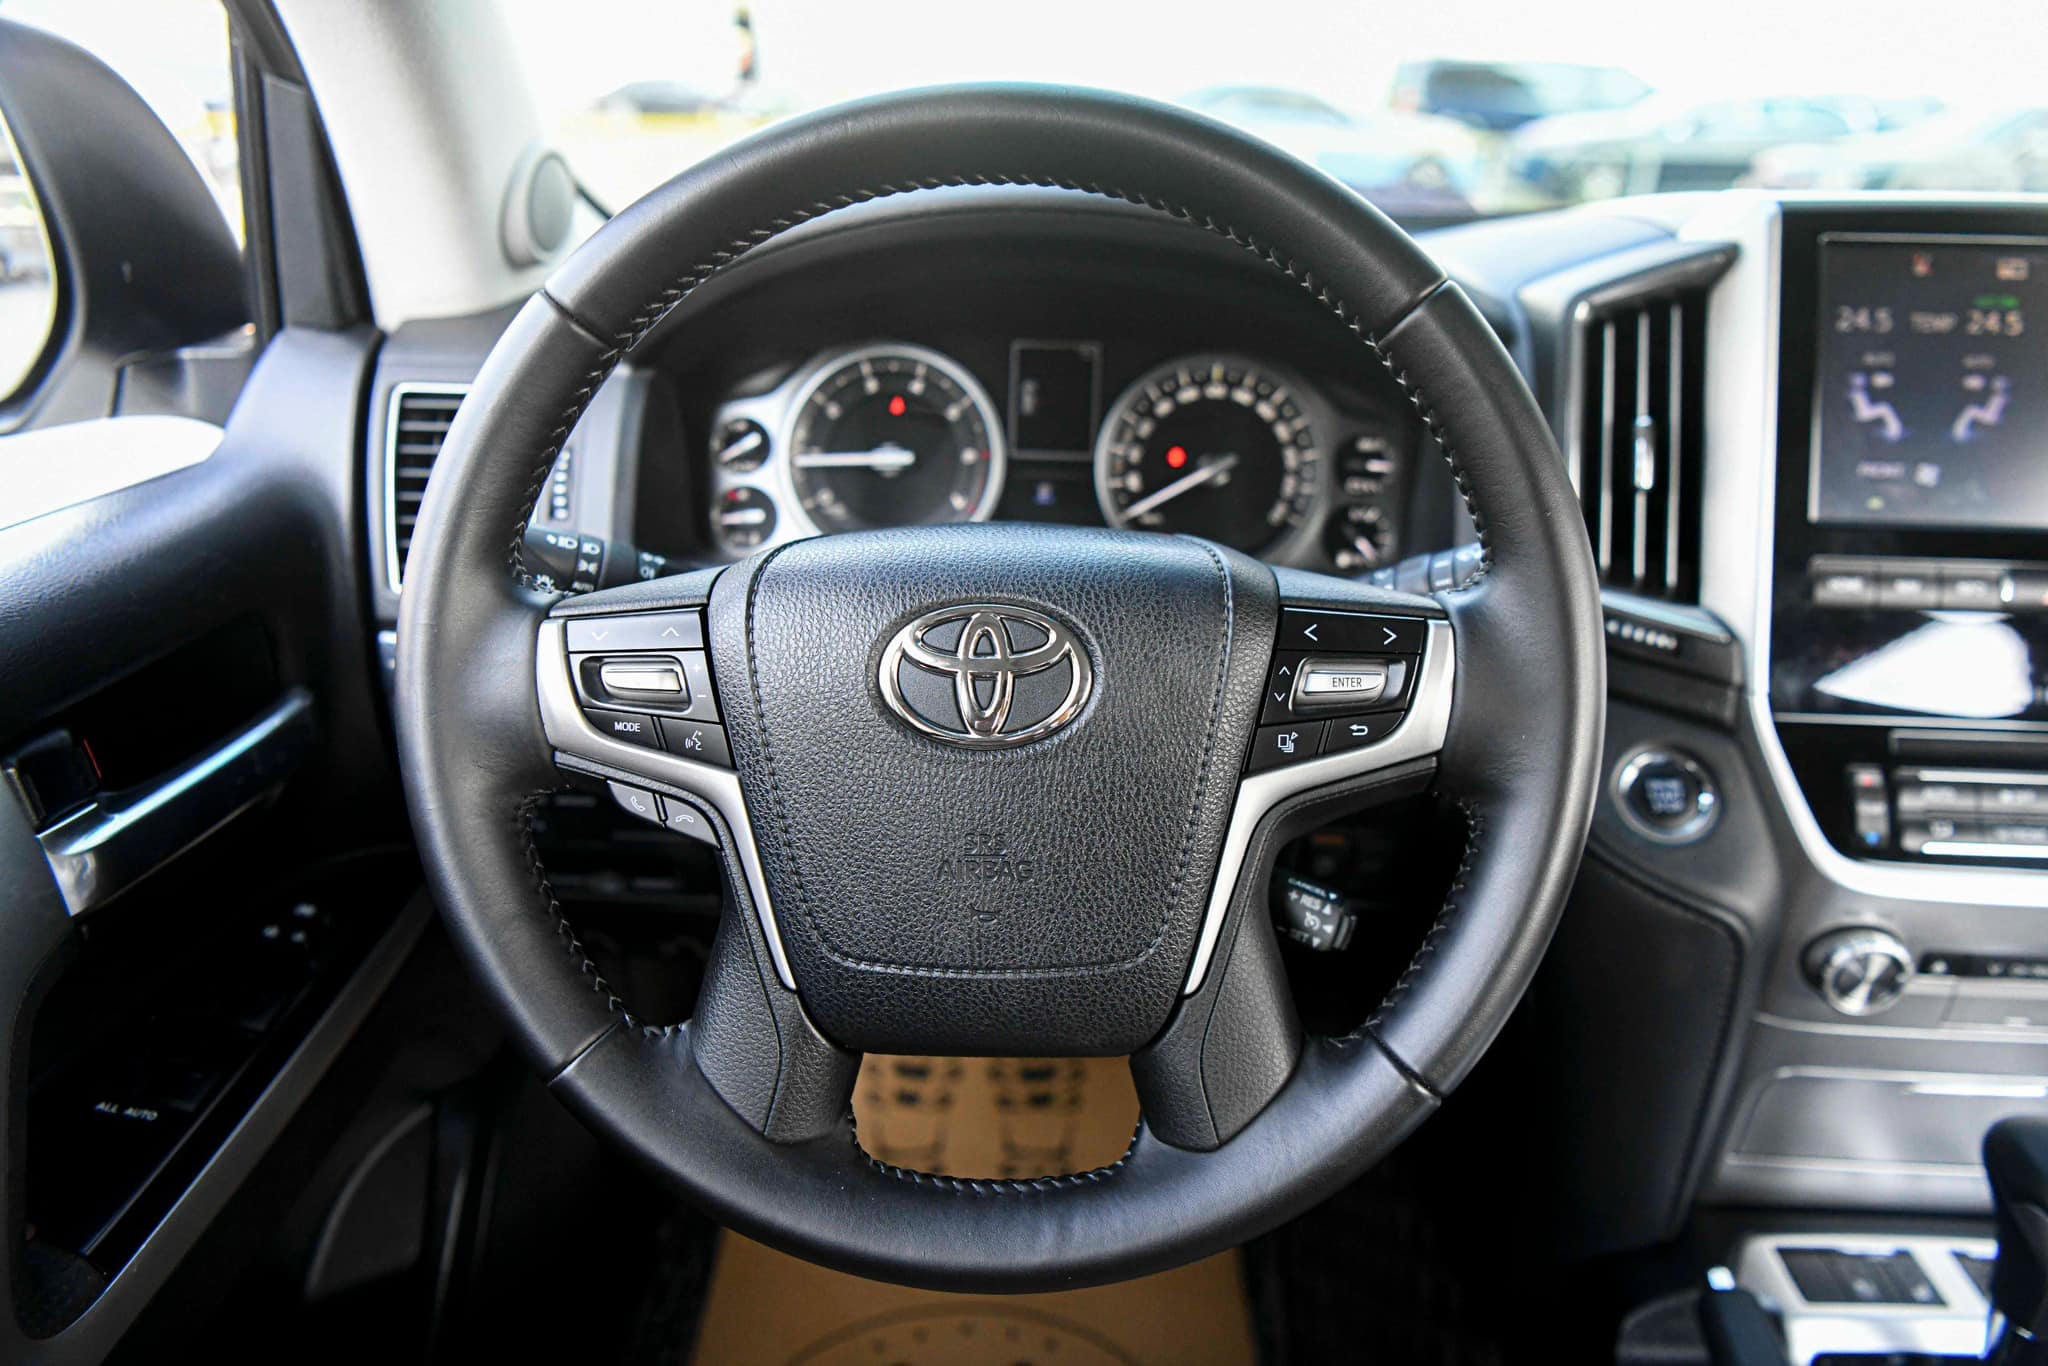 Toyota Land Cruiser VX full